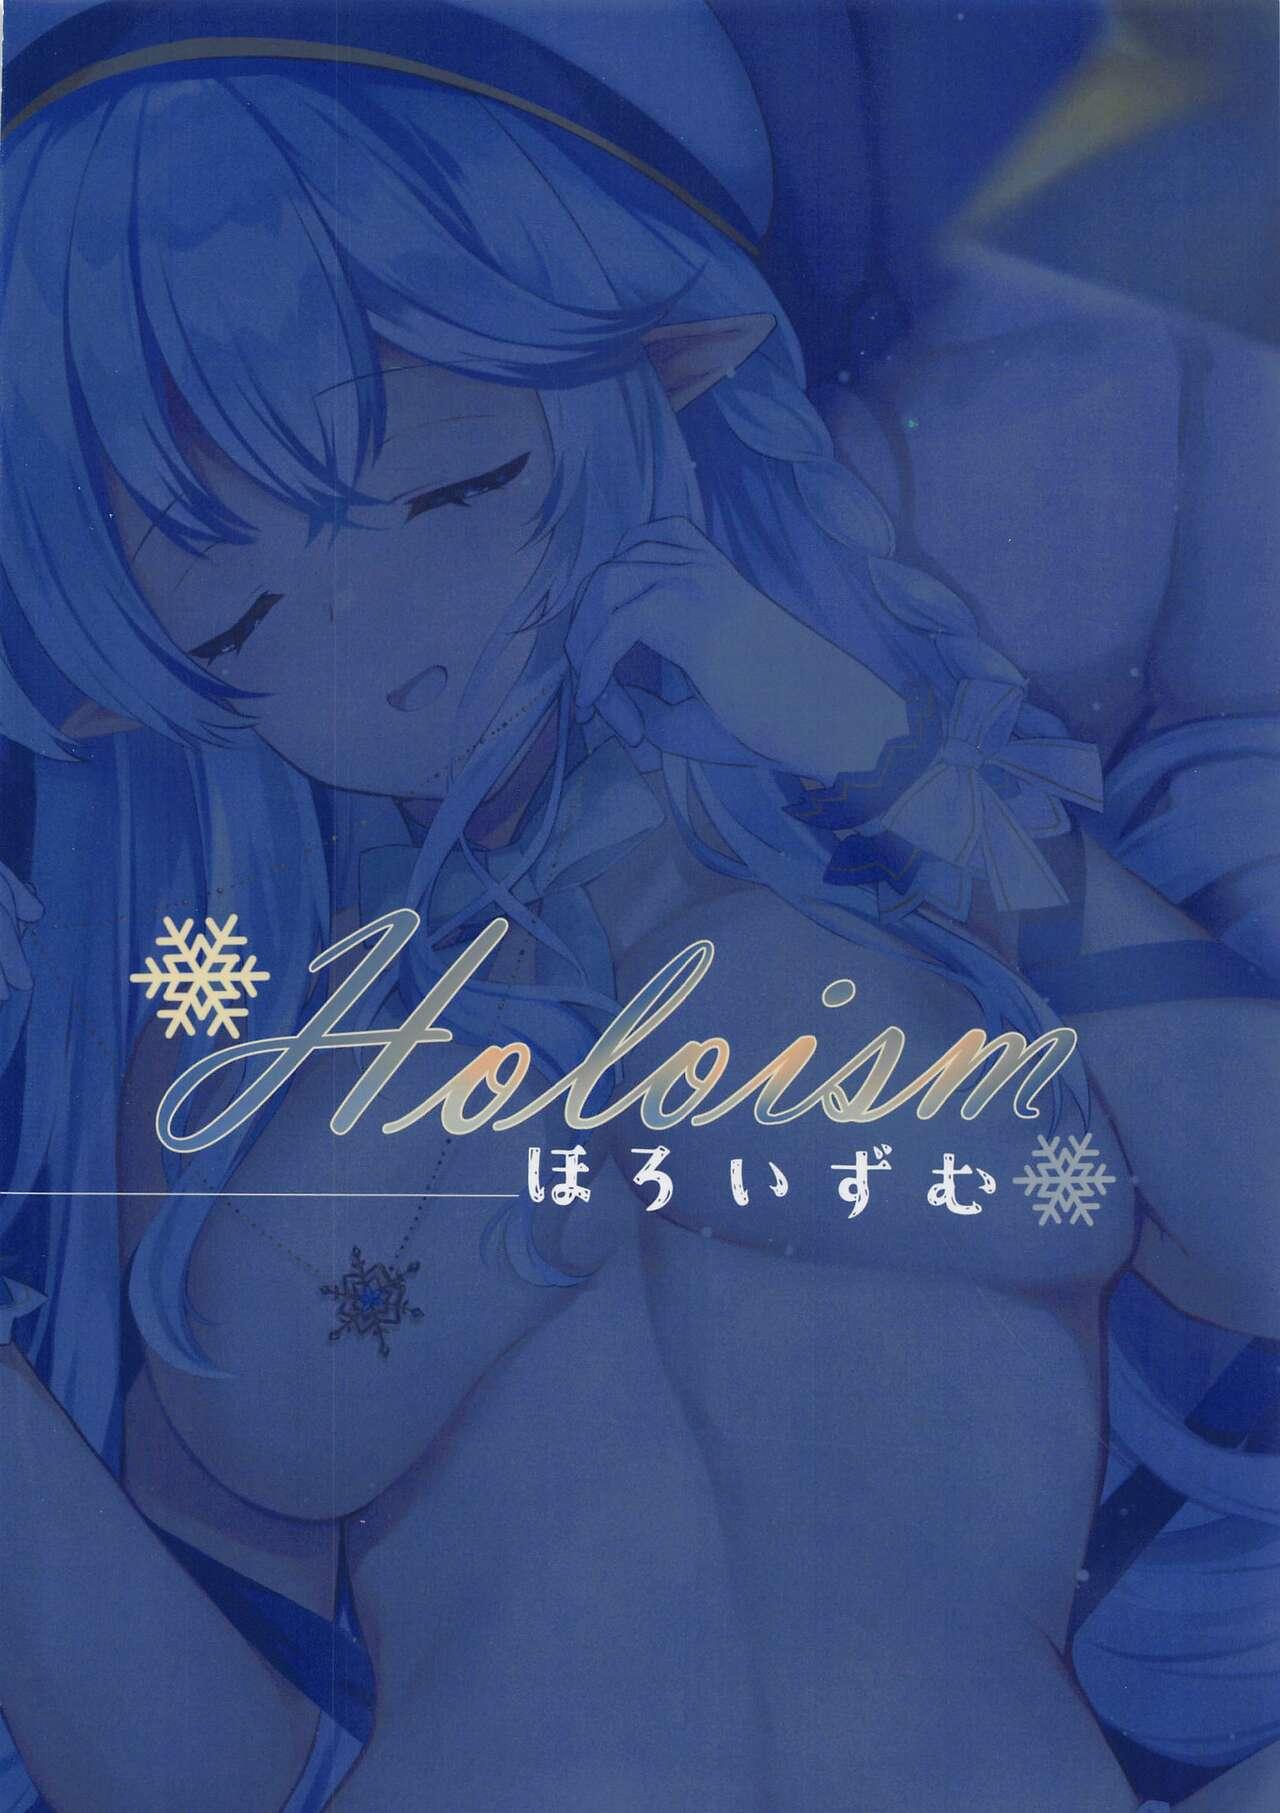 Holoism 25